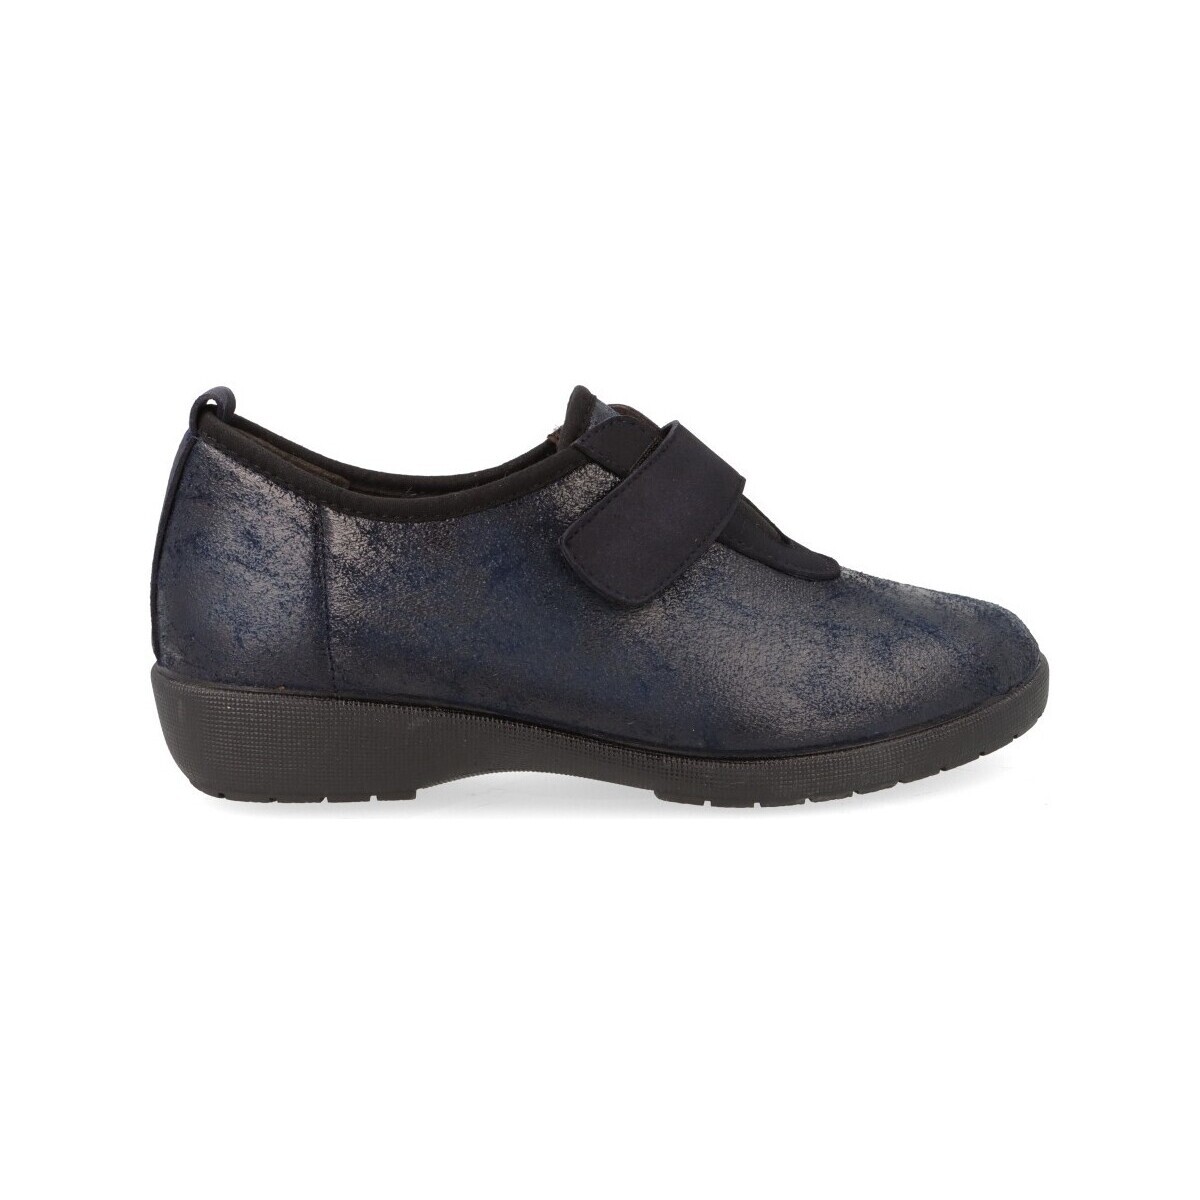 Zapatos Mujer Bailarinas-manoletinas Doctor Cutillas 41613 Azul